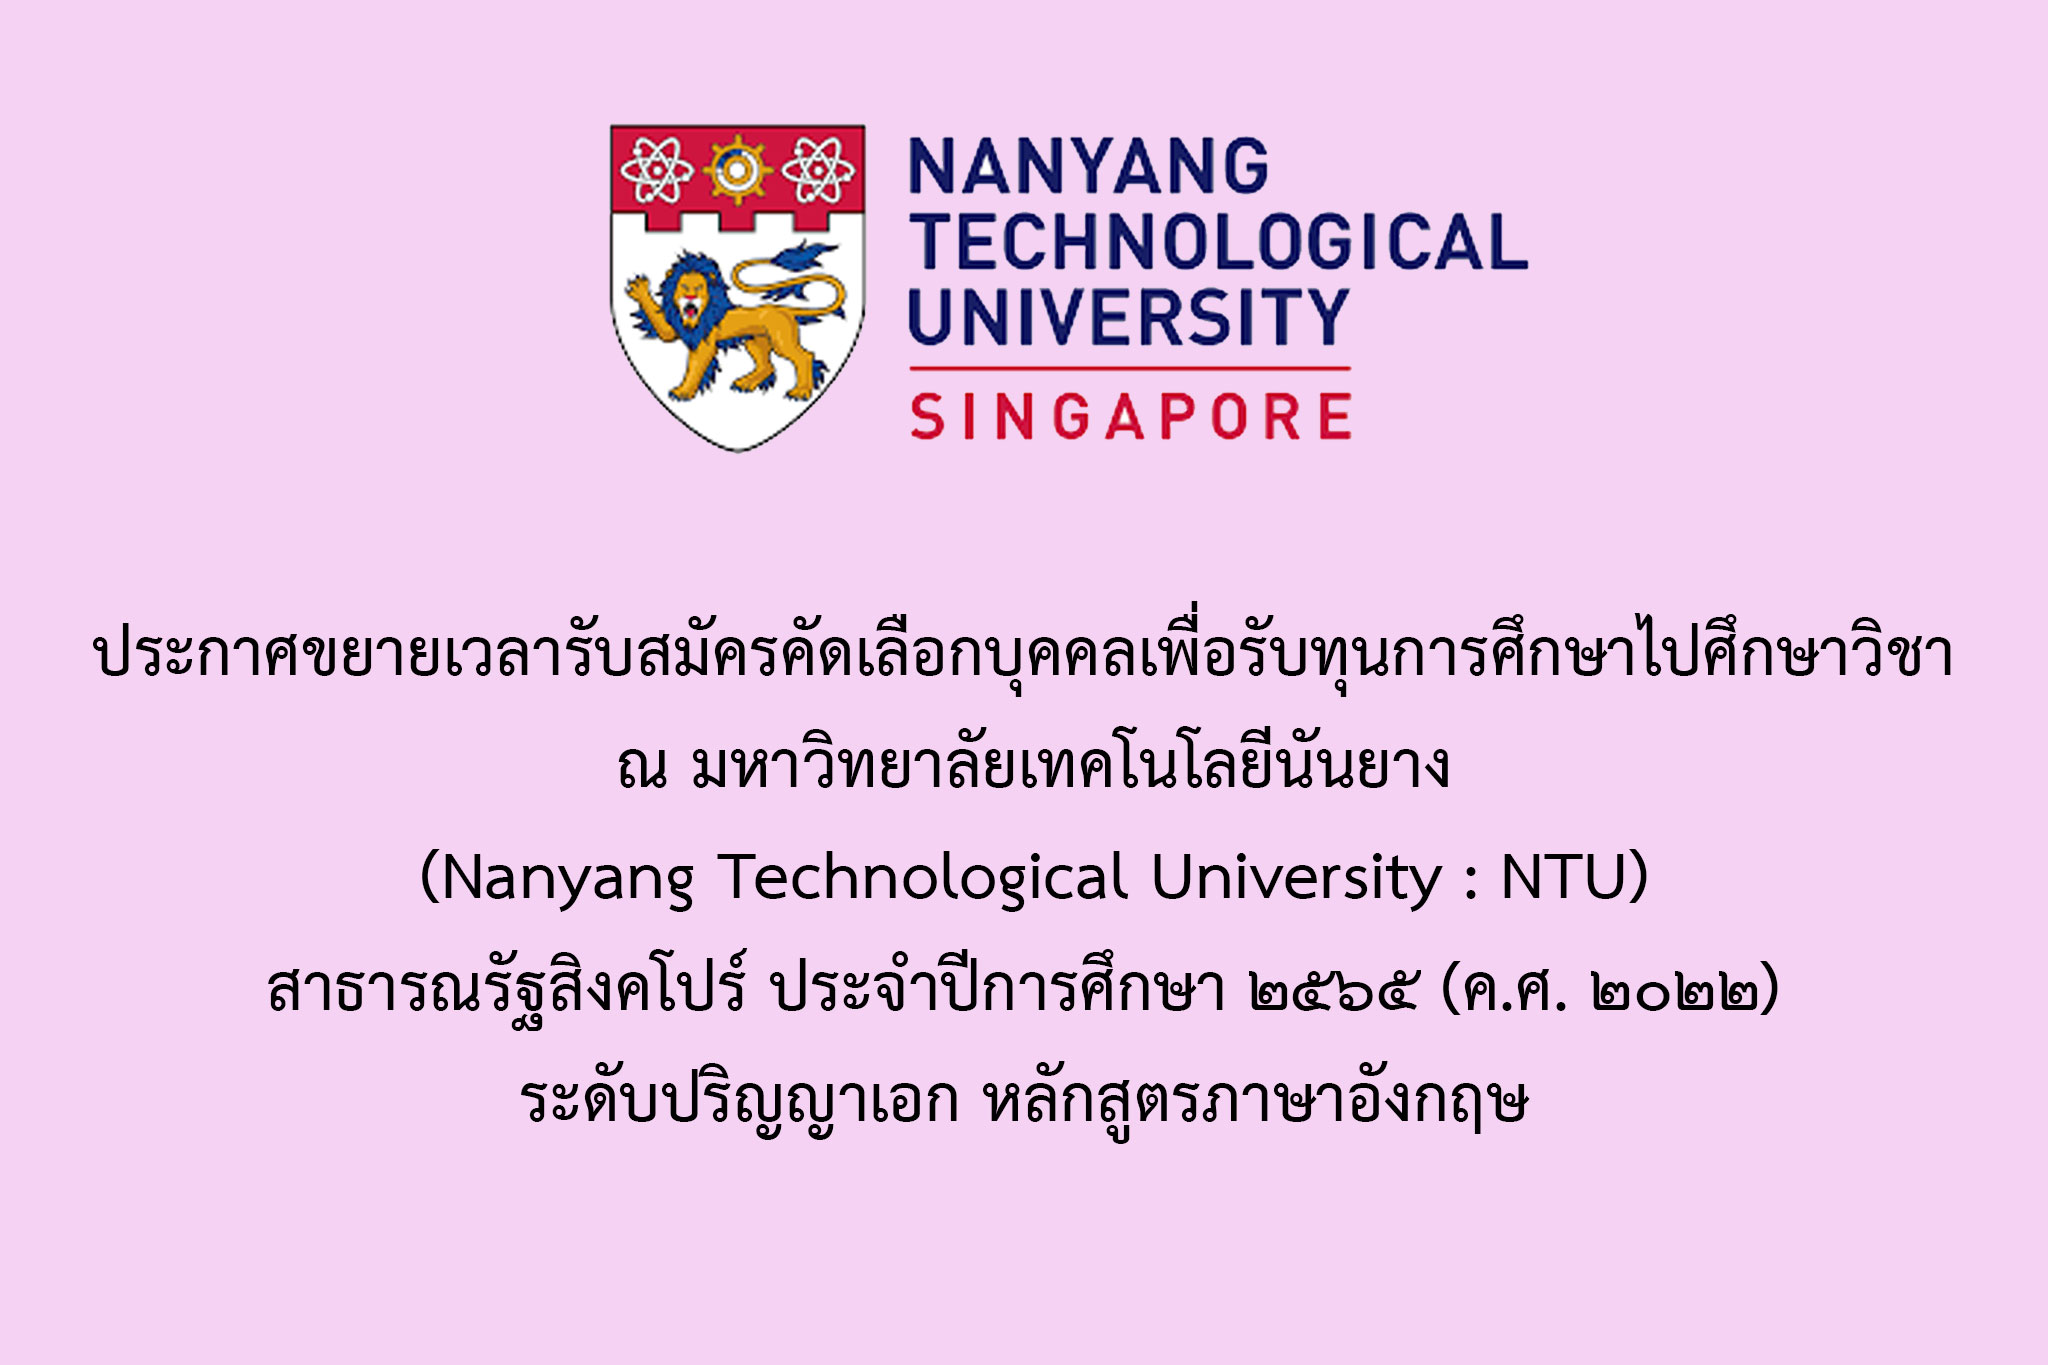      ประกาศขยายเวลารับสมัครคัดเลือกบุคคลเพื่อรับทุนการศึกษาไปศึกษาวิชา ณ มหาวิทยาลัยเทคโนโลยีนันยาง (Nanyang Technological University : NTU) สาธารณรัฐสิงคโปร์ ประจำปีการศึกษา 2565 (ค.ศ. 2022) ระดับปริญญาเอก หลักสูตรภาษาอังกฤษ